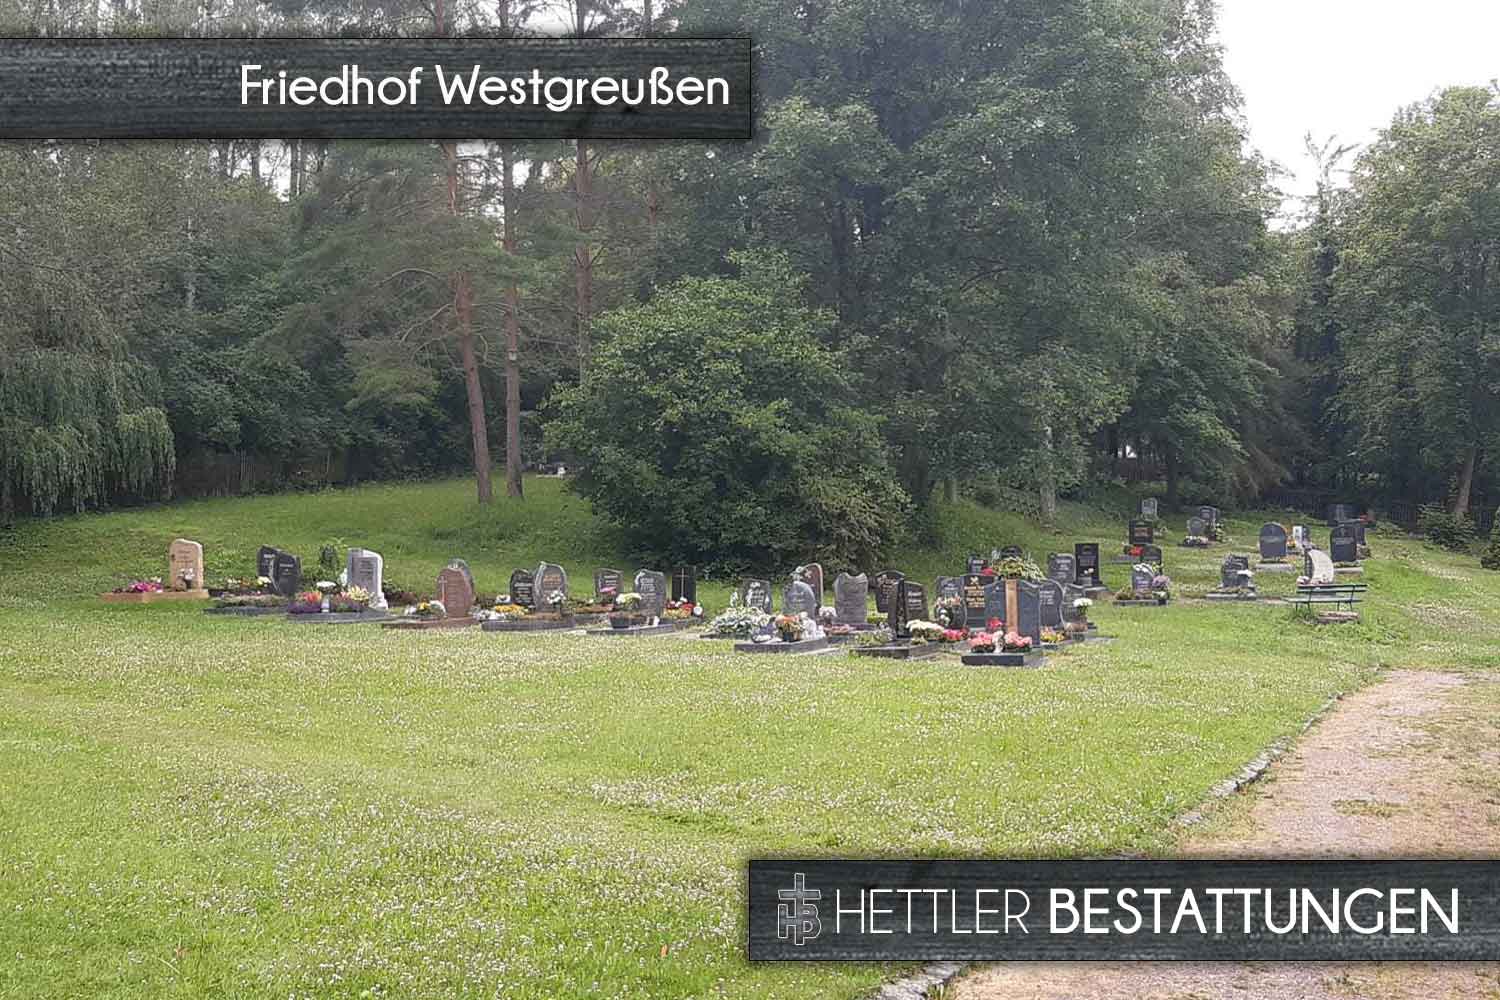 Friedhof in Westgreußen. Ihr Ort des Abschieds mit Hettler Bestattungen.